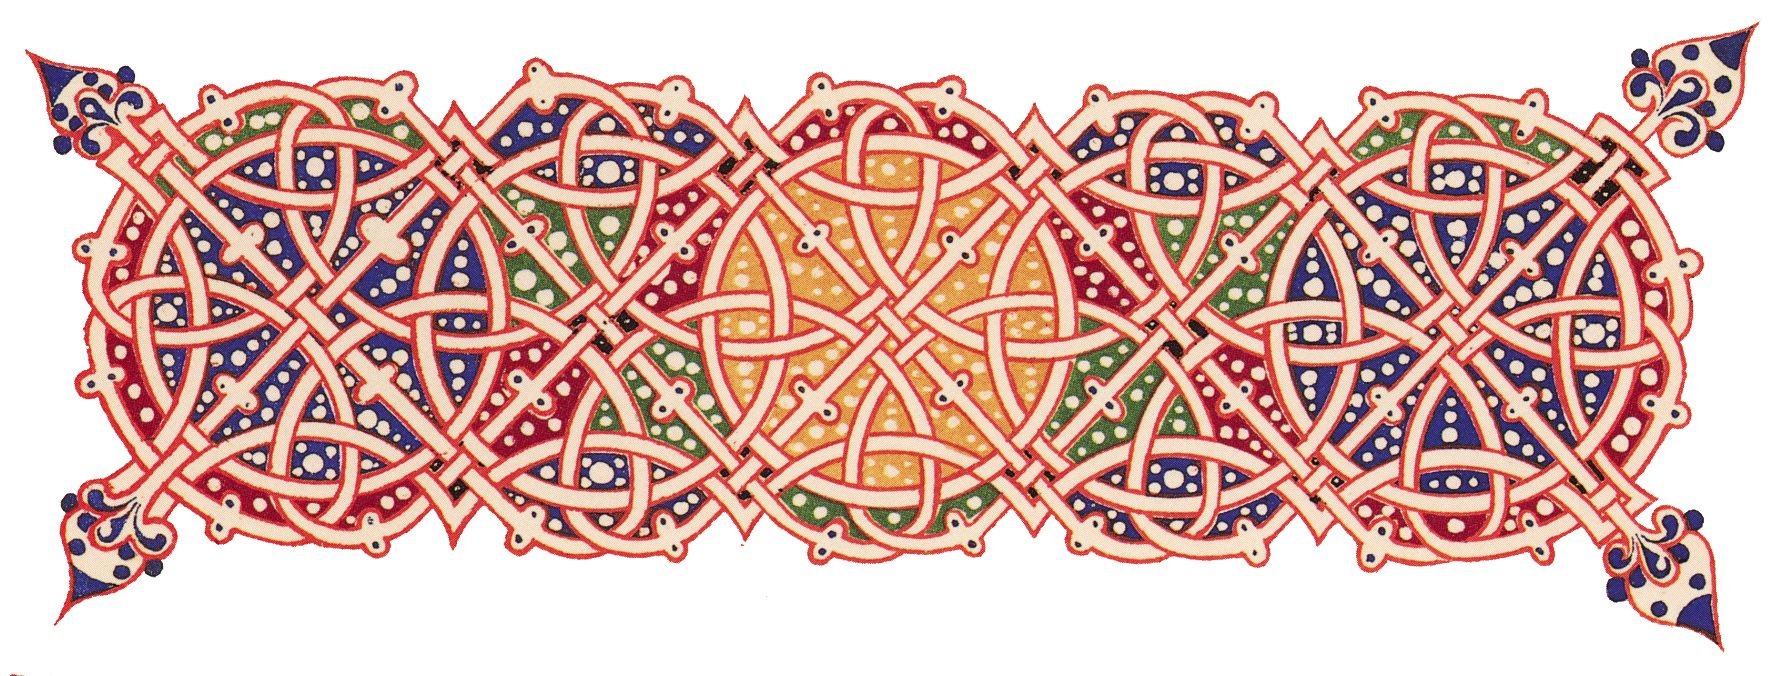 Византийский орнамент плетенка